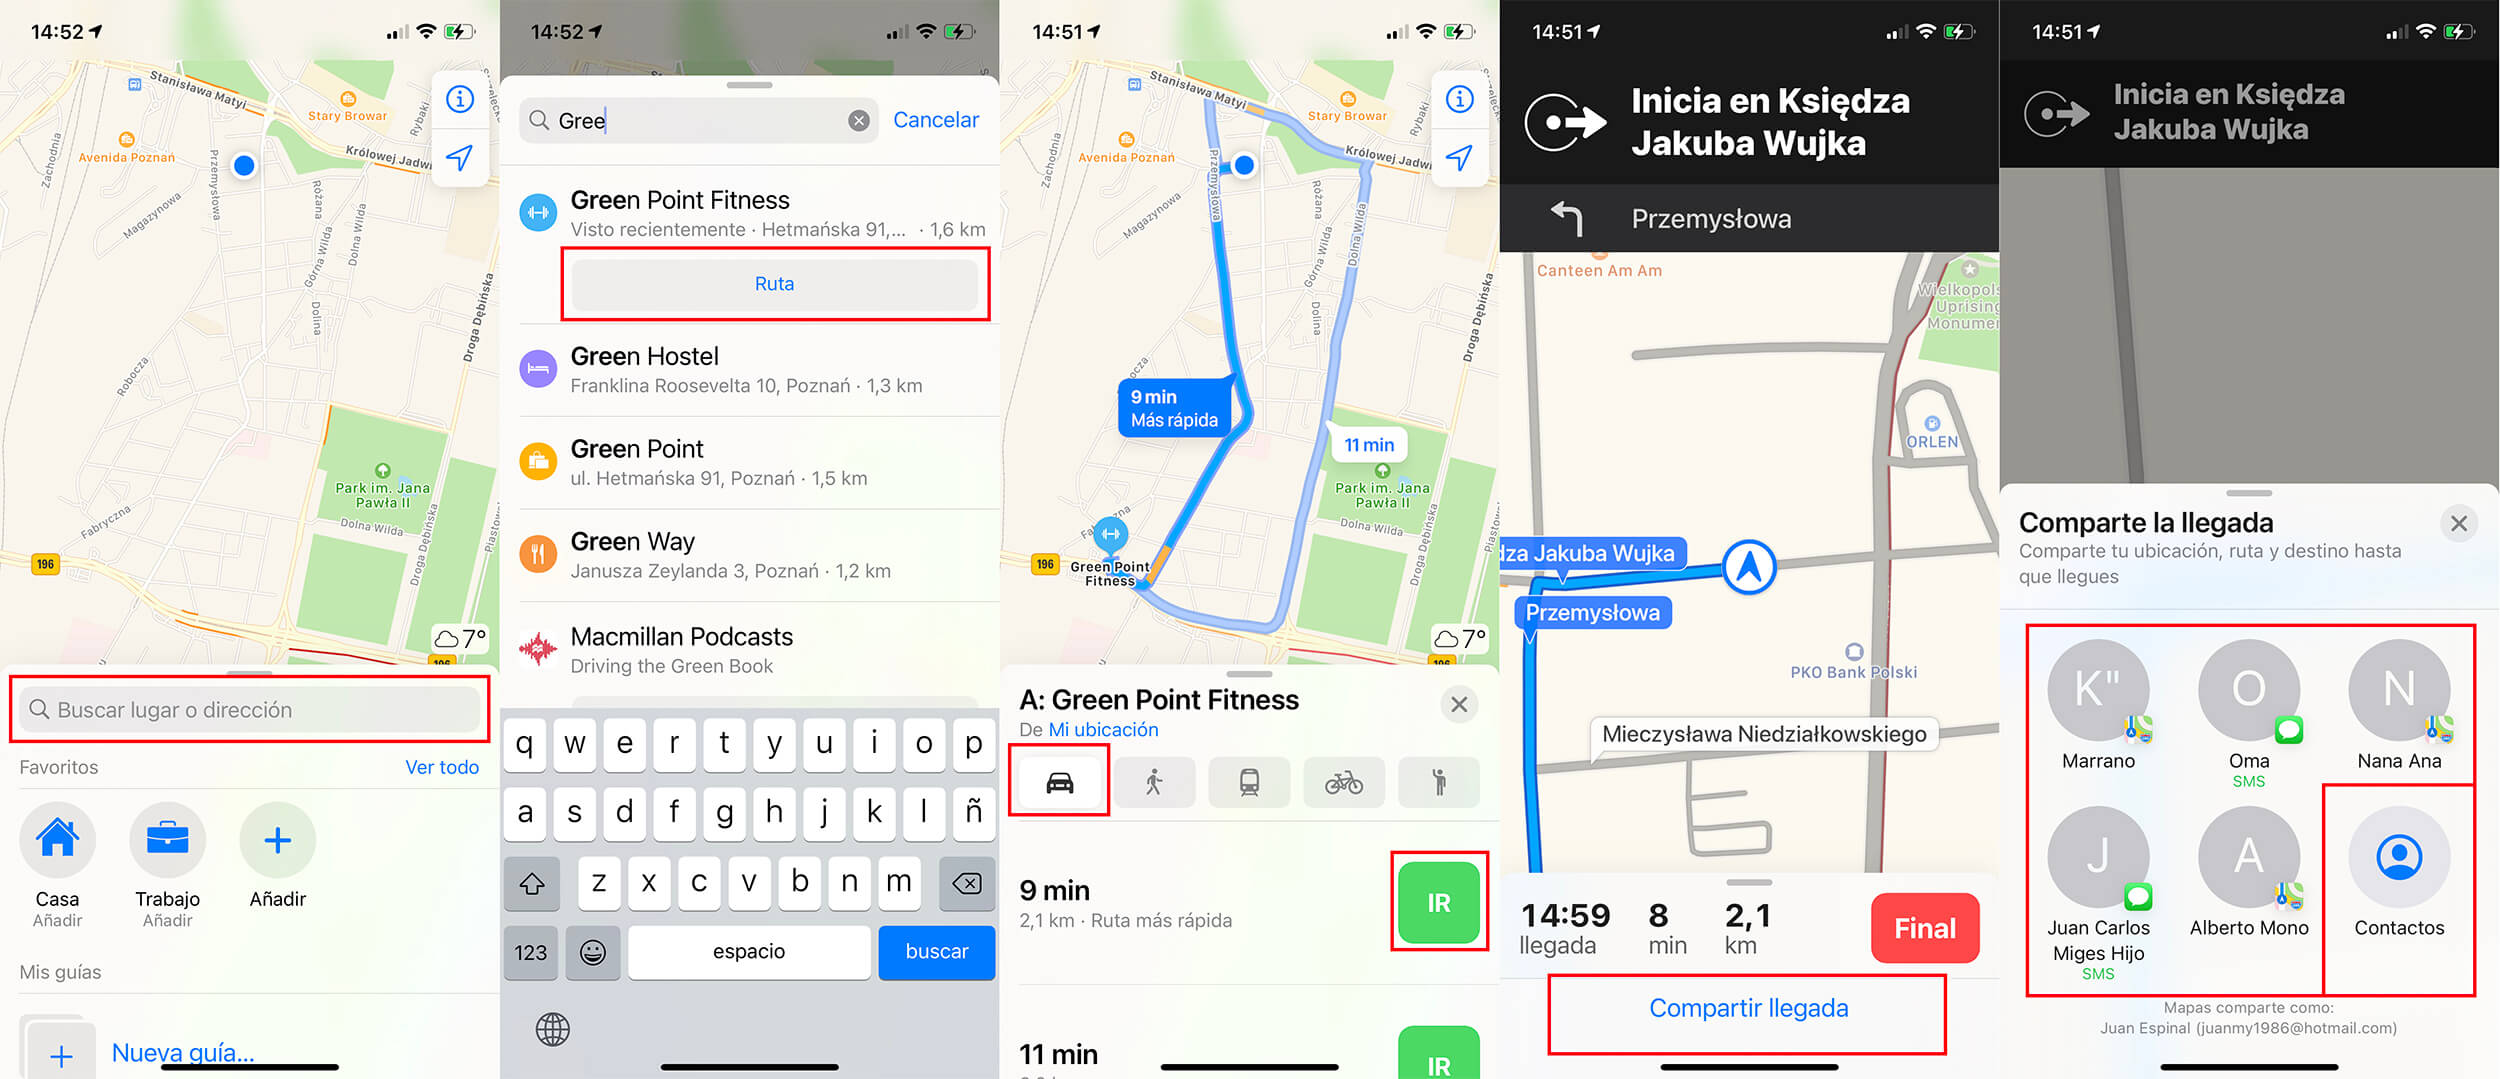 como compartir la hora de llegada a un sitio desde la app Mapas de iPhone